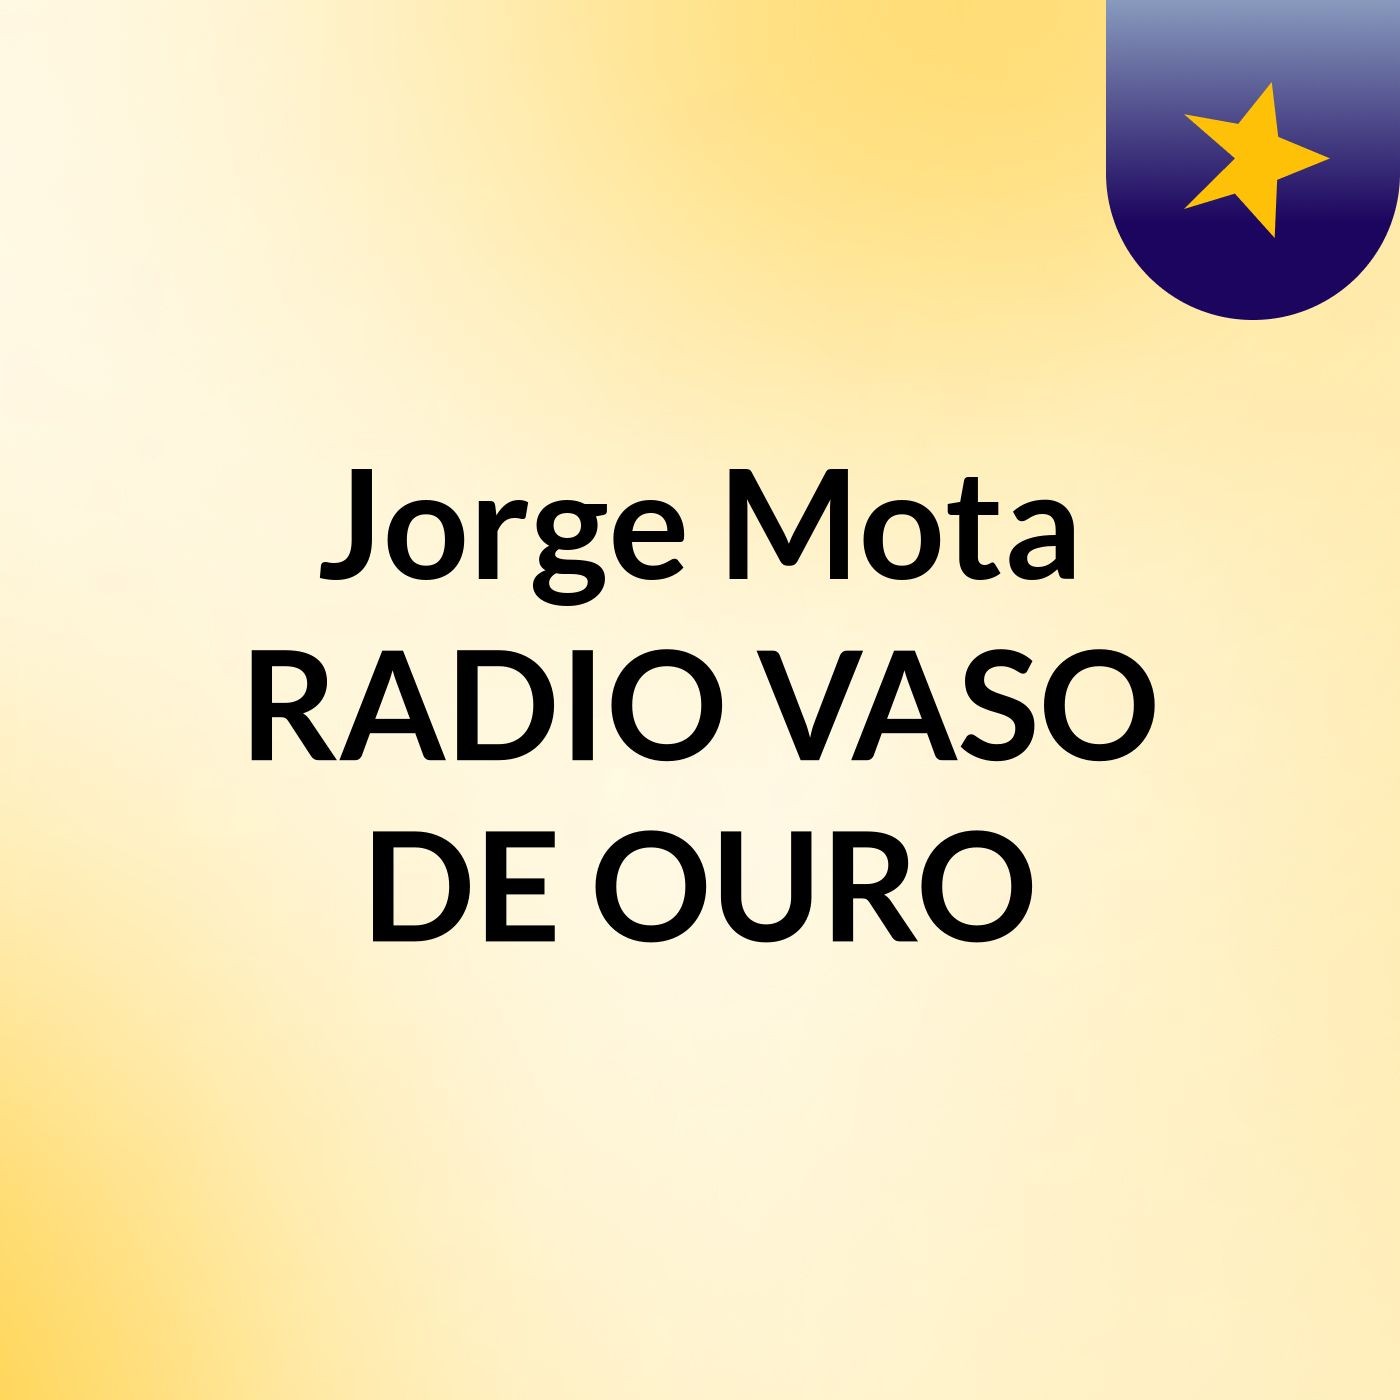 Jorge Mota RADIO VASO DE OURO